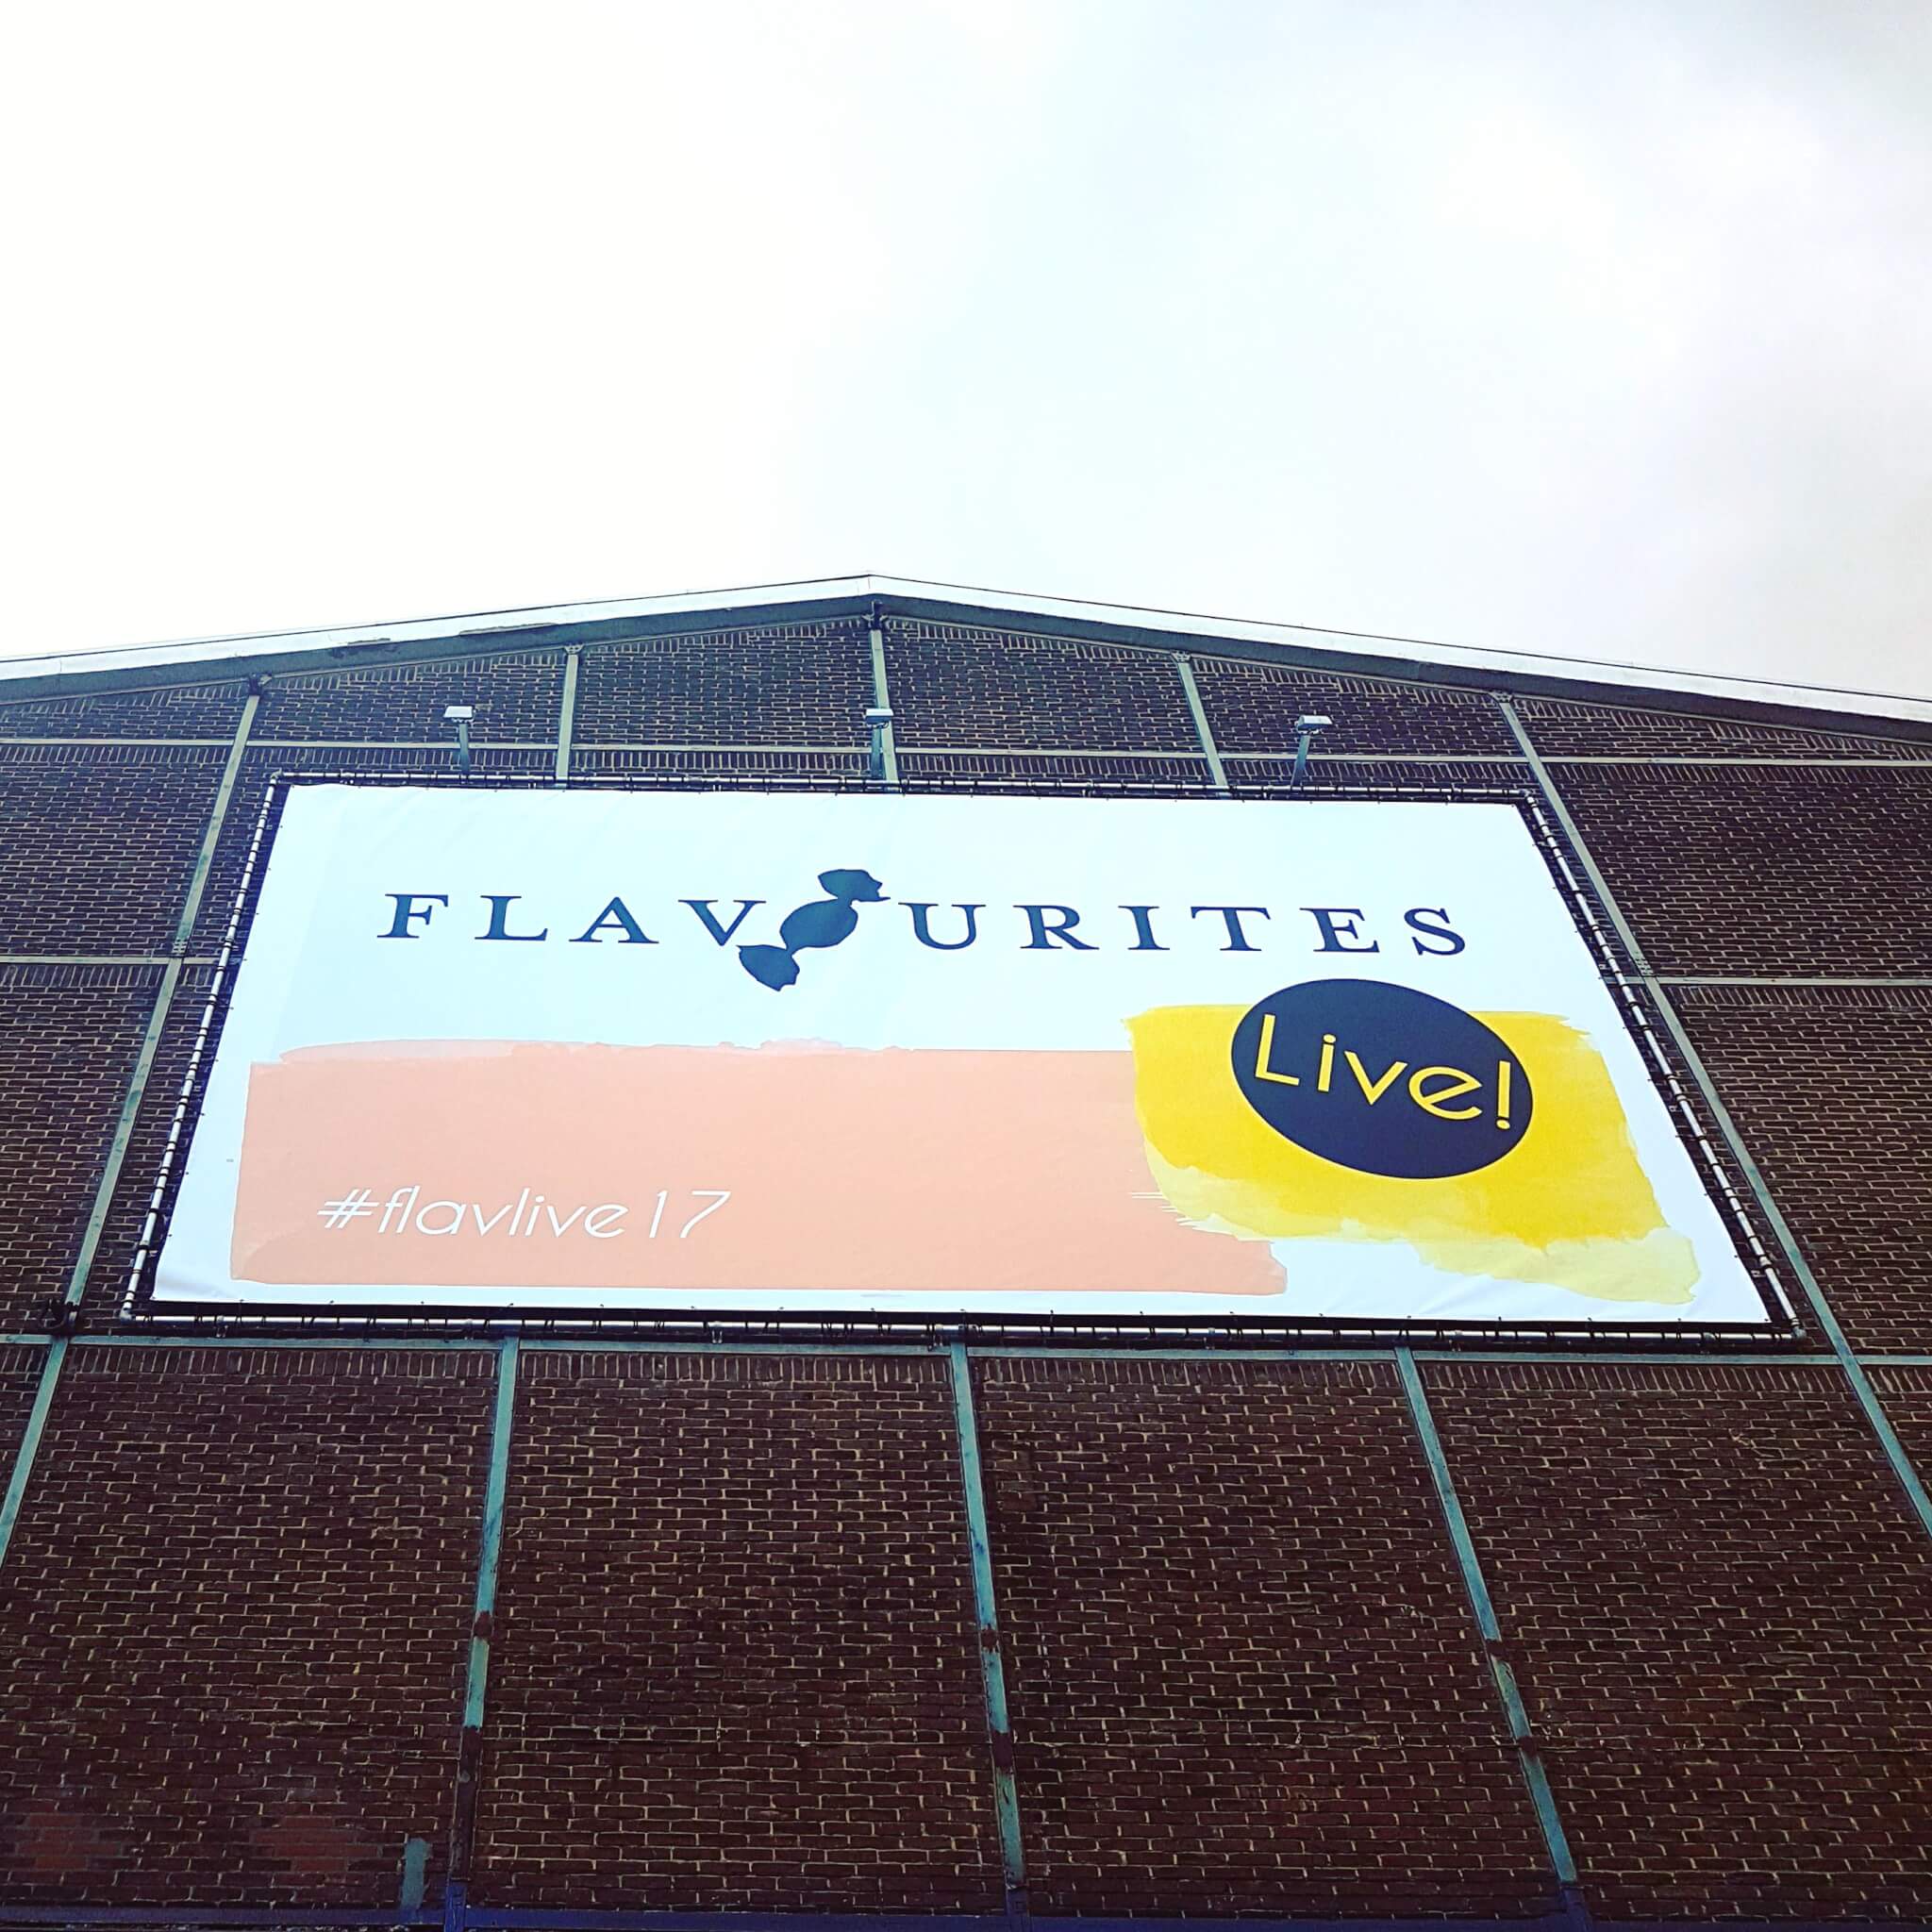 Flavourites Live: een impressie van alle mooie dingen in bijzondere webshops